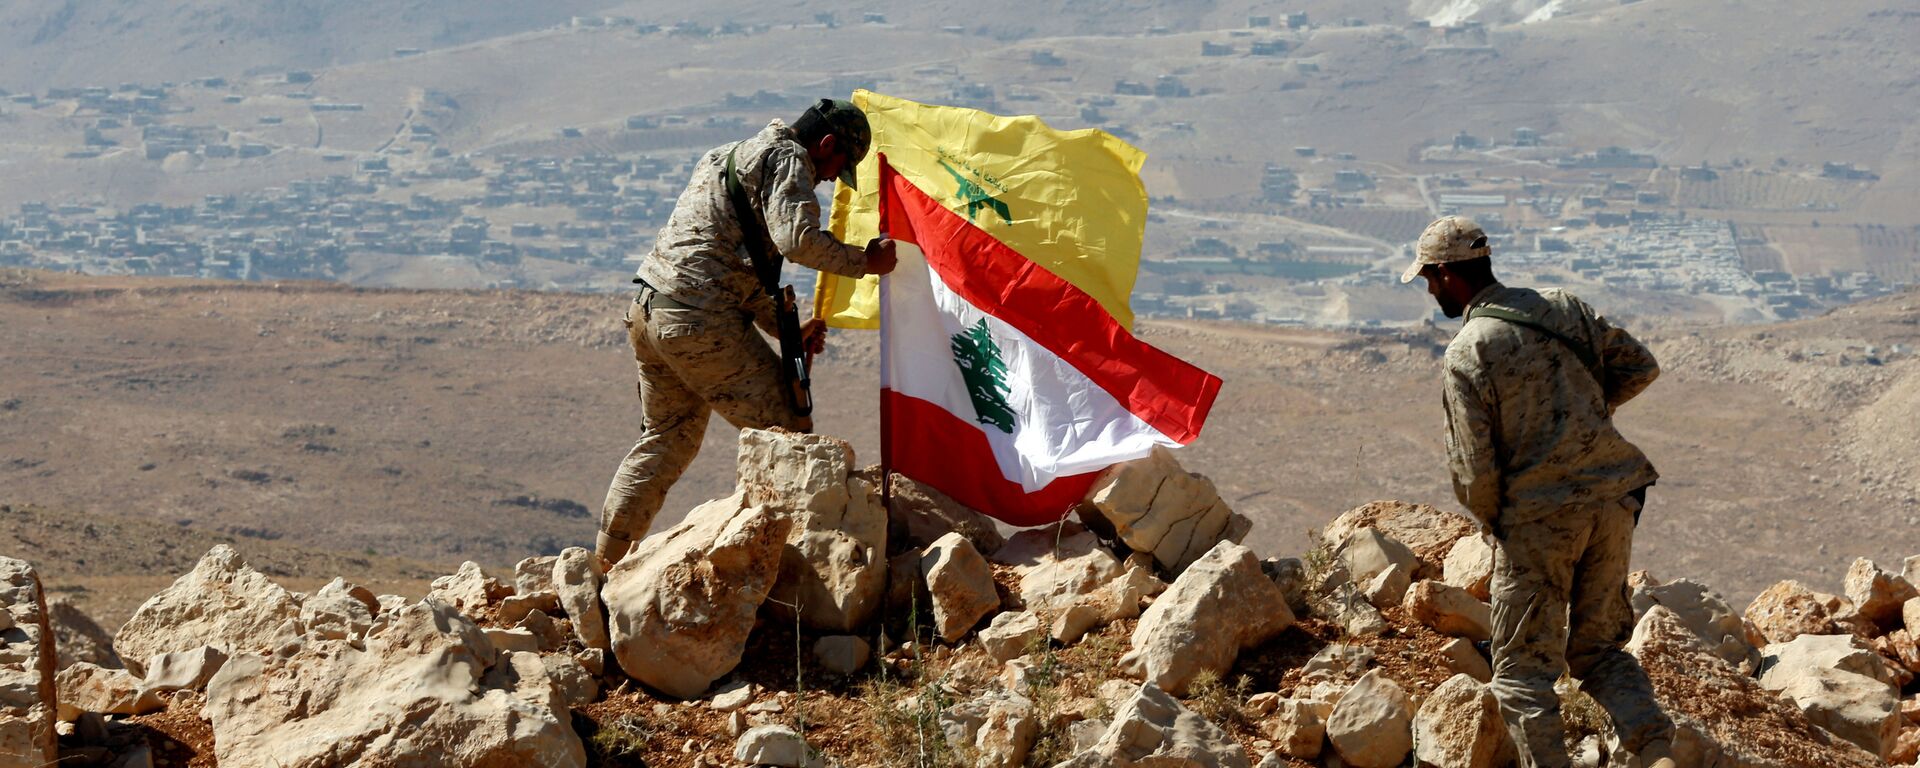 Los militares instalan las banderas de Hizbulá y Líbano en la frontera sirio-libanesa - Sputnik Afrique, 1920, 17.06.2021